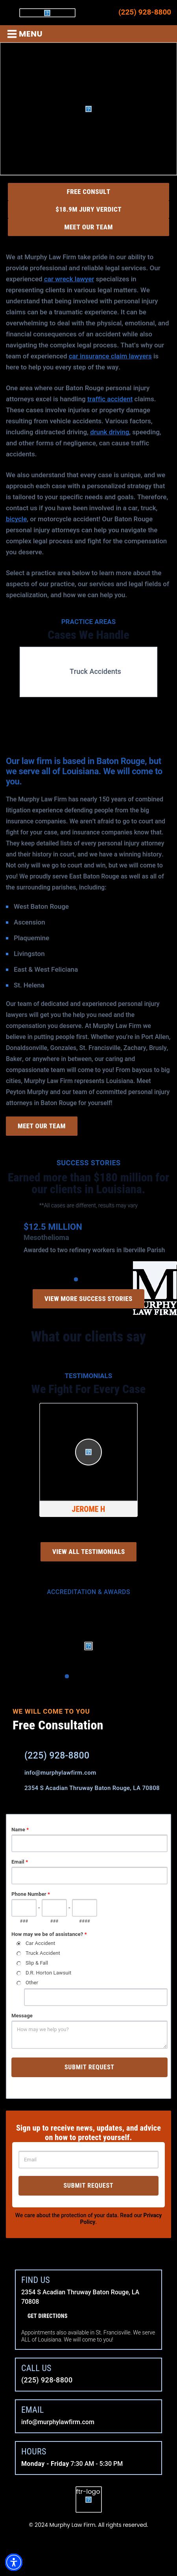 Murphy Law Firm LLC - Lafayette LA Lawyers